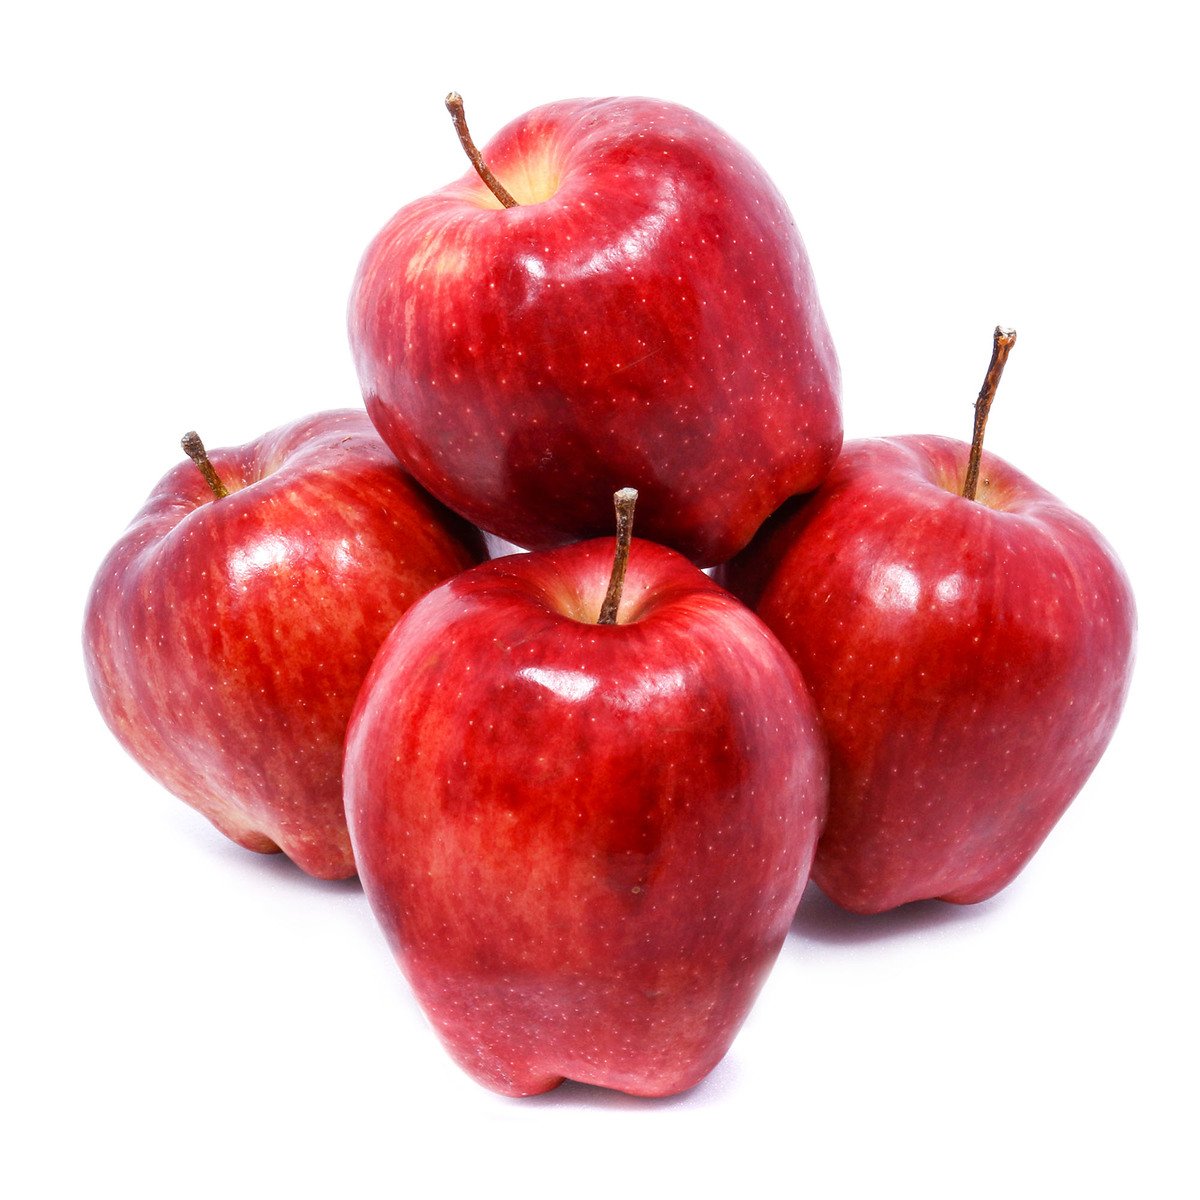 Buy Apple Red USA 1 kg Online at Best Price | Apples | Lulu Kuwait in Saudi Arabia